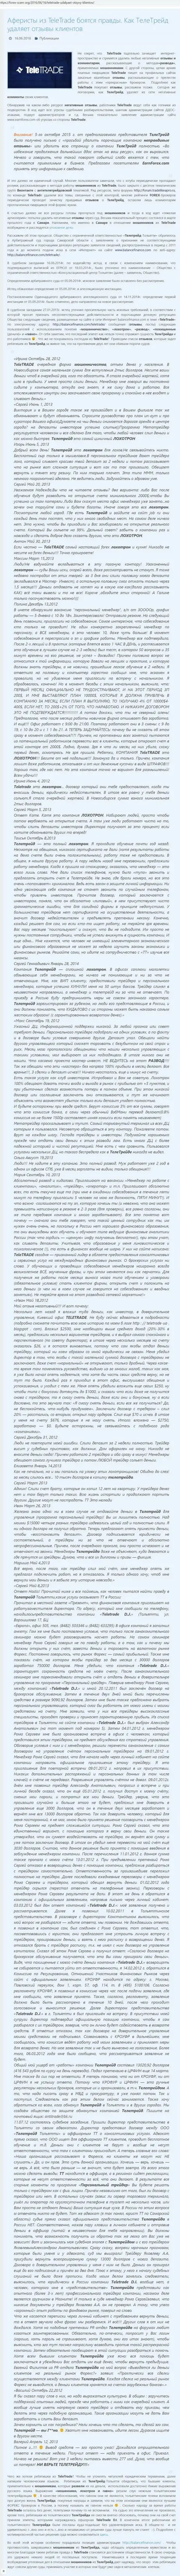 Свидетельство ddos атак в отношении неугодных лиц для циничных мошенников TeleTrade Ru